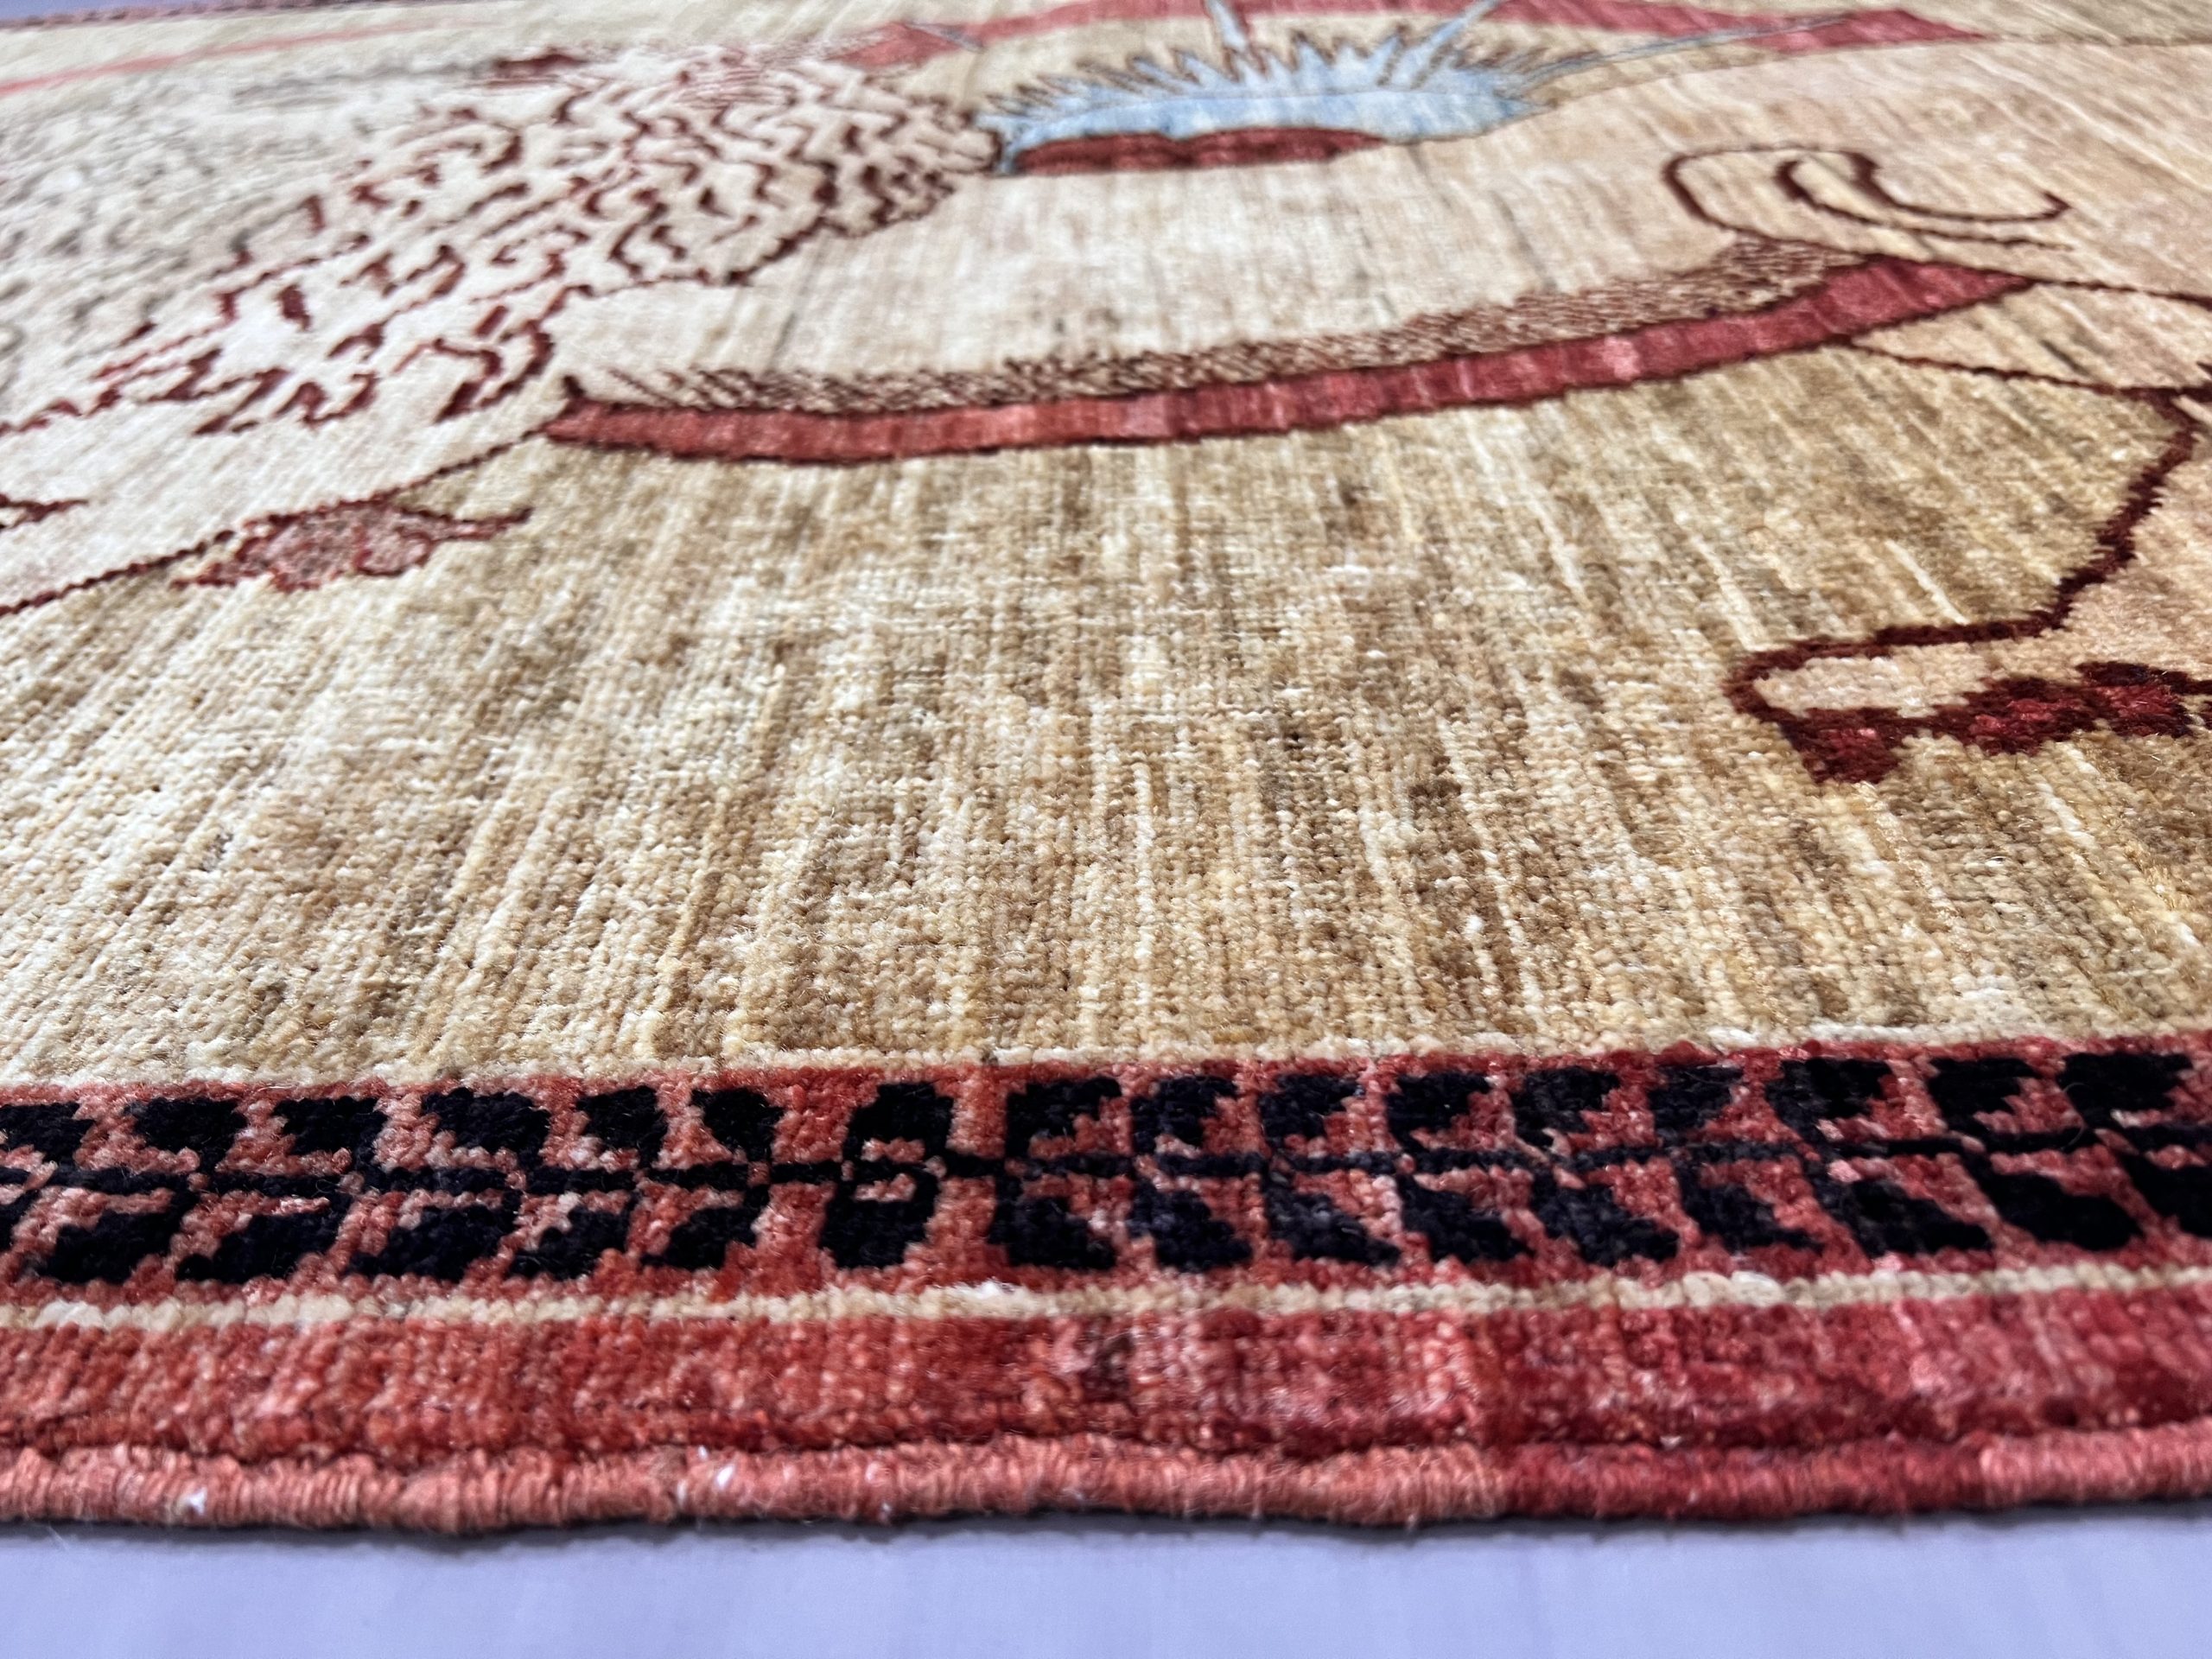 Rug#26542, Afghan Turkaman weave, Lion-Rug, vegetable dyes, size 149x99 cm (5)